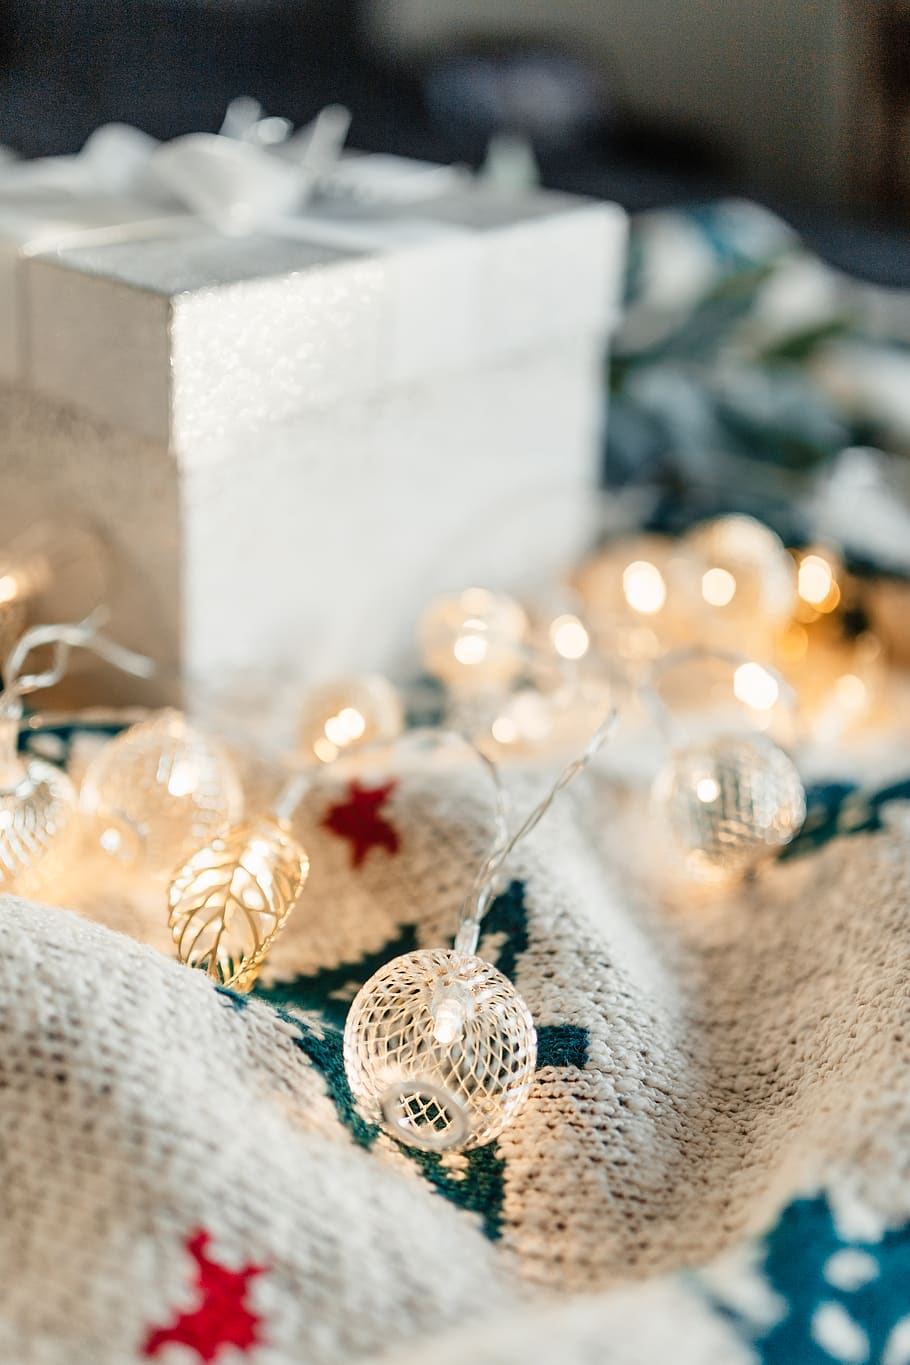 hadiah natal, xmas, natal, desember, musim dingin, selimut, hadiah, putih, dekoratif, kotak